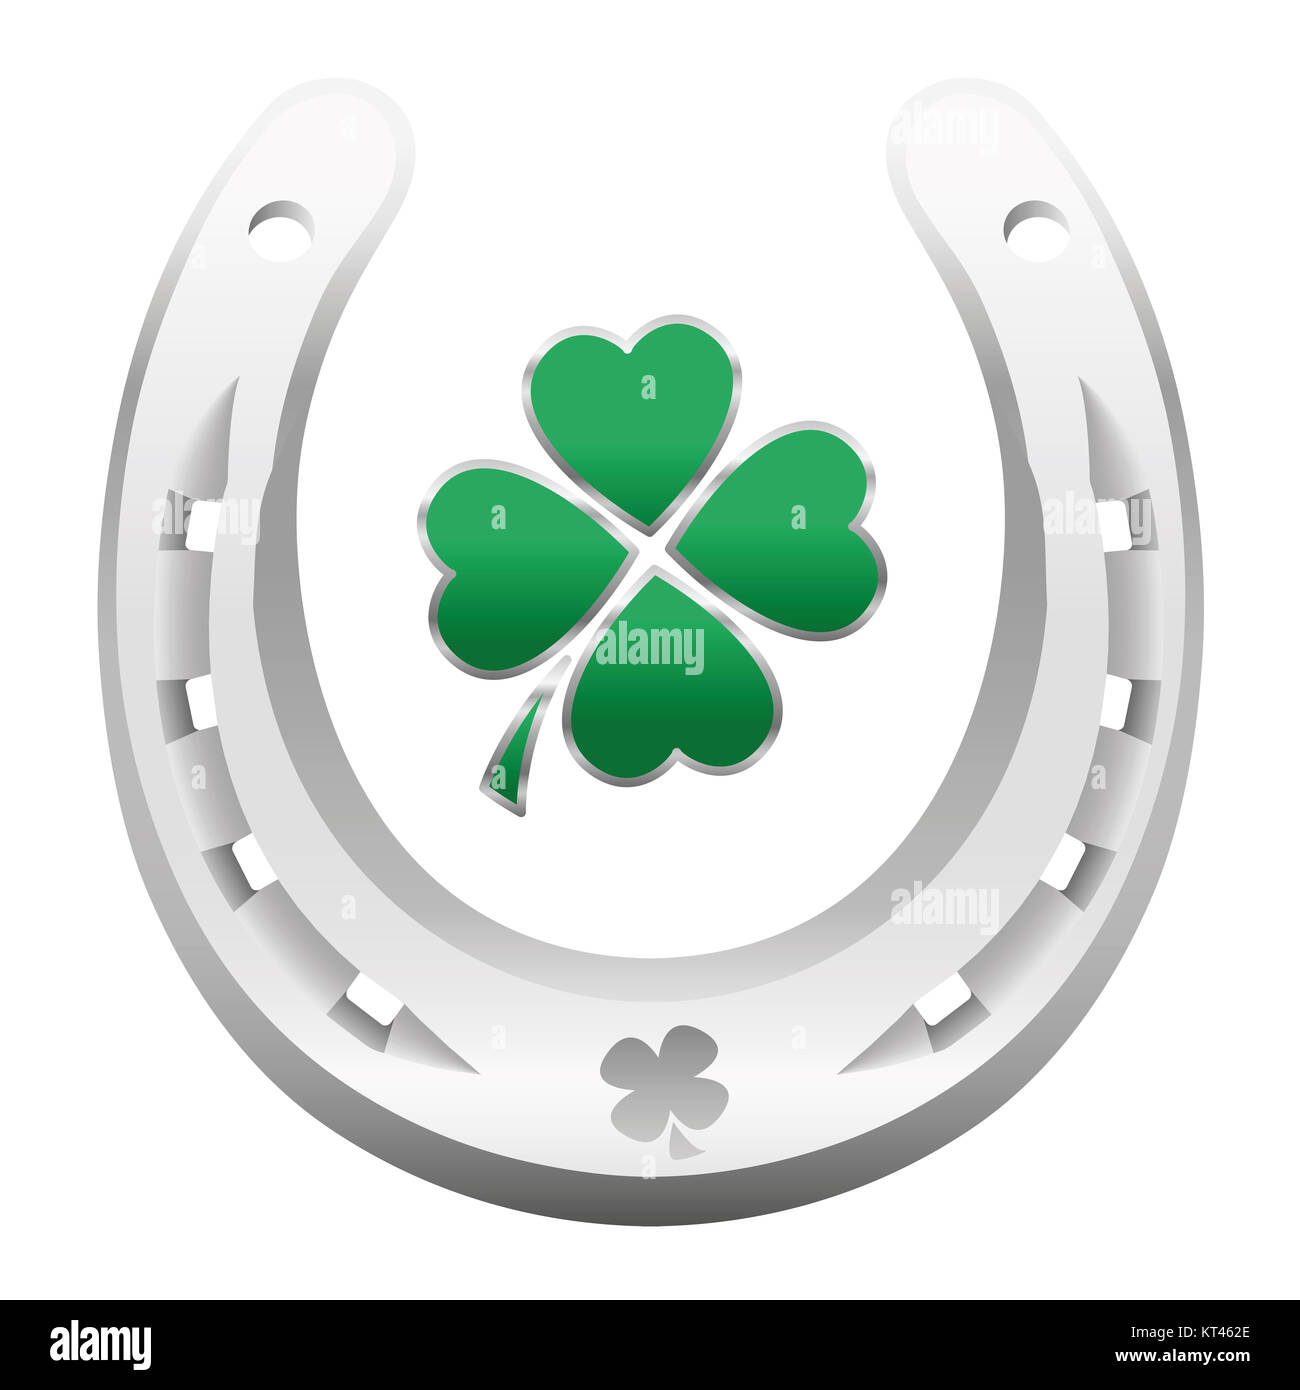 Symboles de la chance - horseshoe et clover leaf pour atteindre la chance, le bonheur, le succès, la santé, la richesse, la fortune et la prospérité de l'année prochaine. Banque D'Images